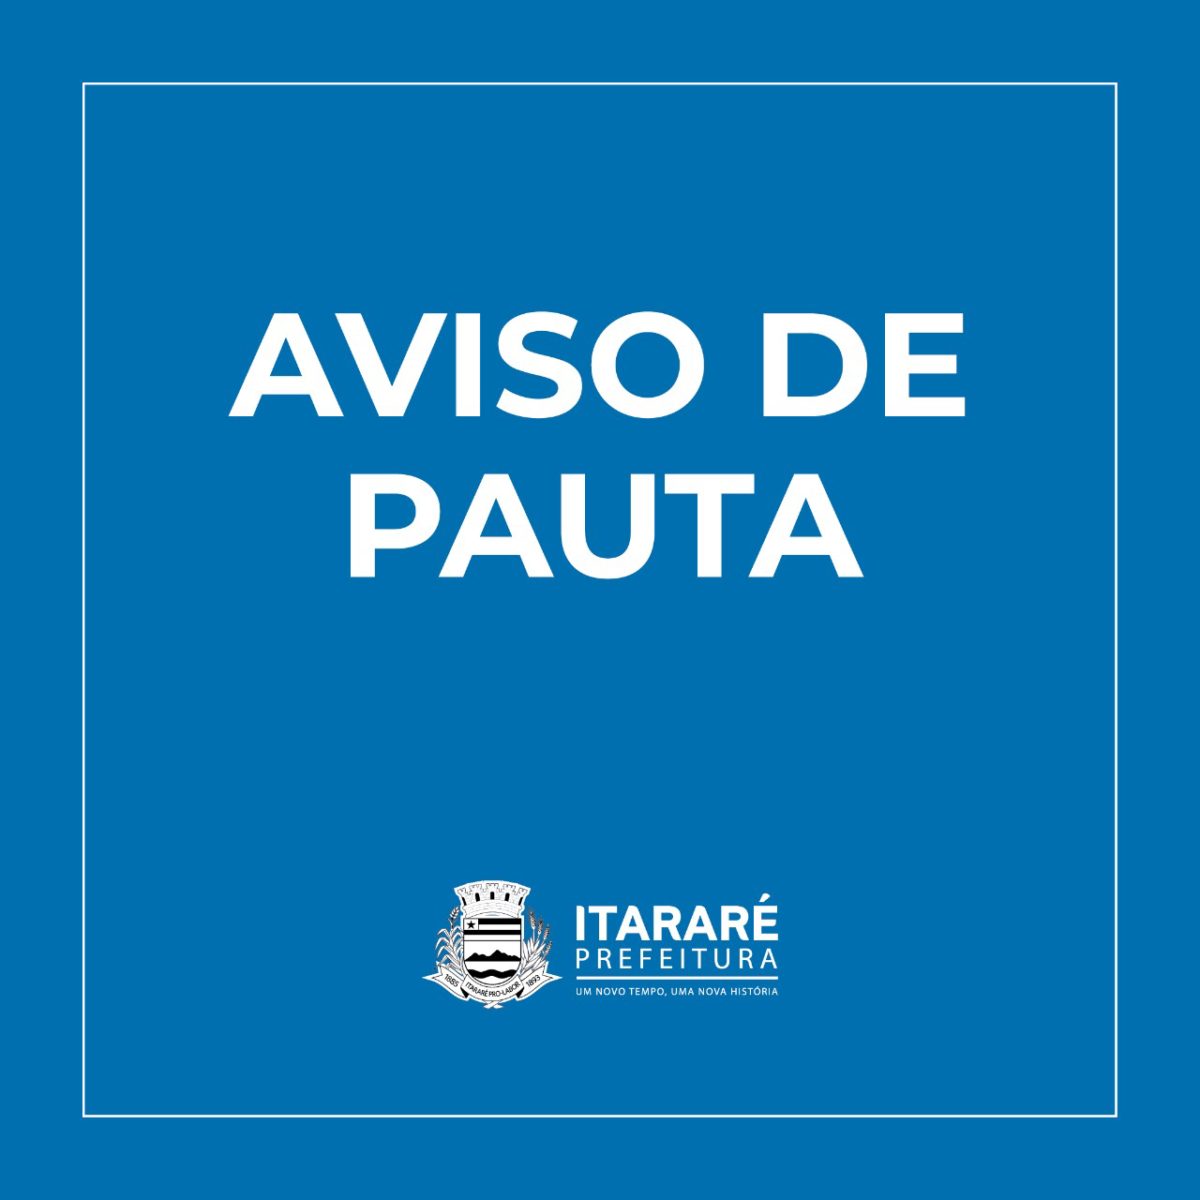 AVISO DE PAUTA: Prefeito de Itararé (SP) participa da inauguração do Necrim